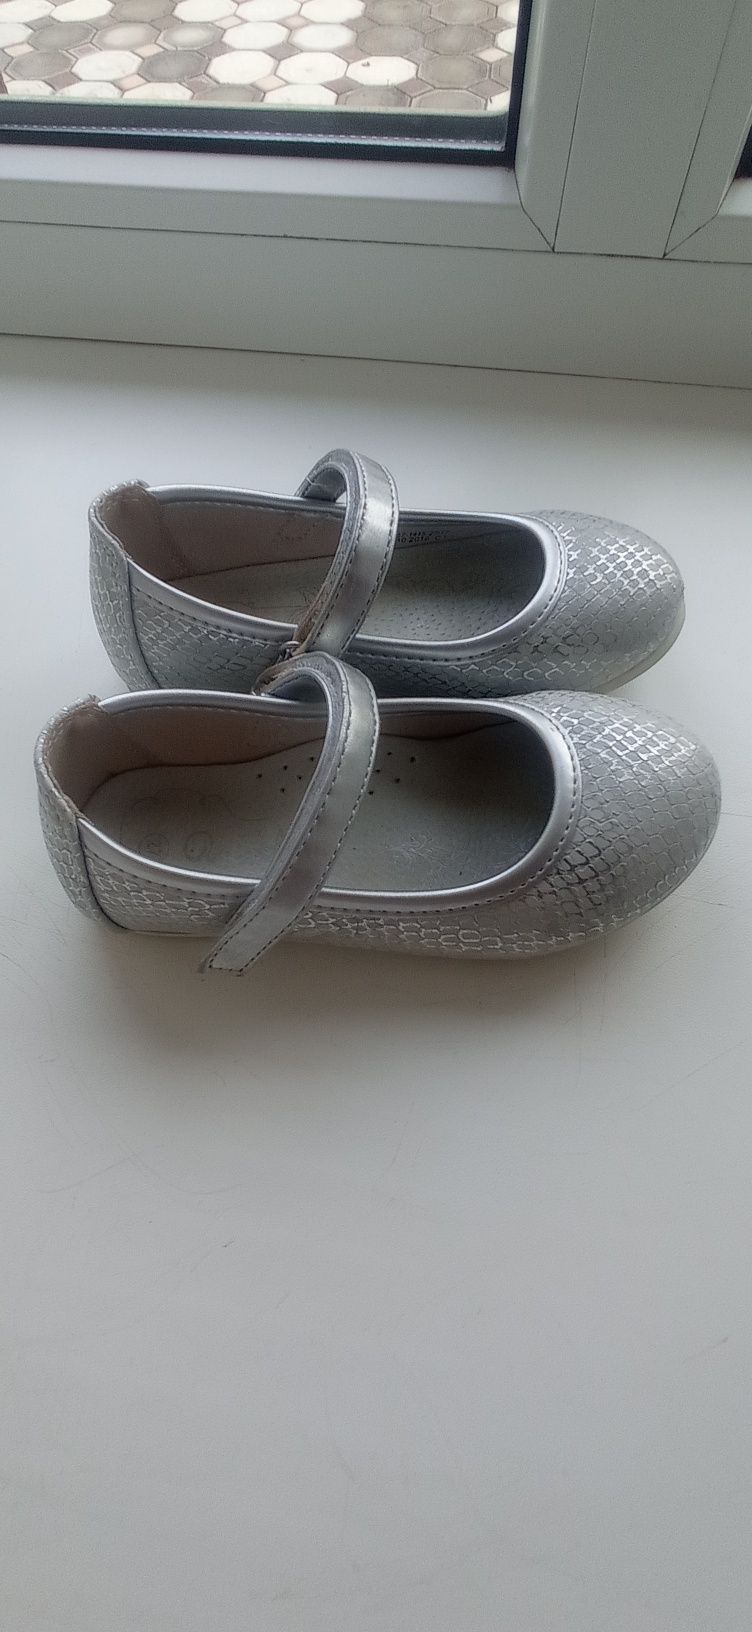 Шкіряні срібні туфельки. Розмір 27, устілка 17 см